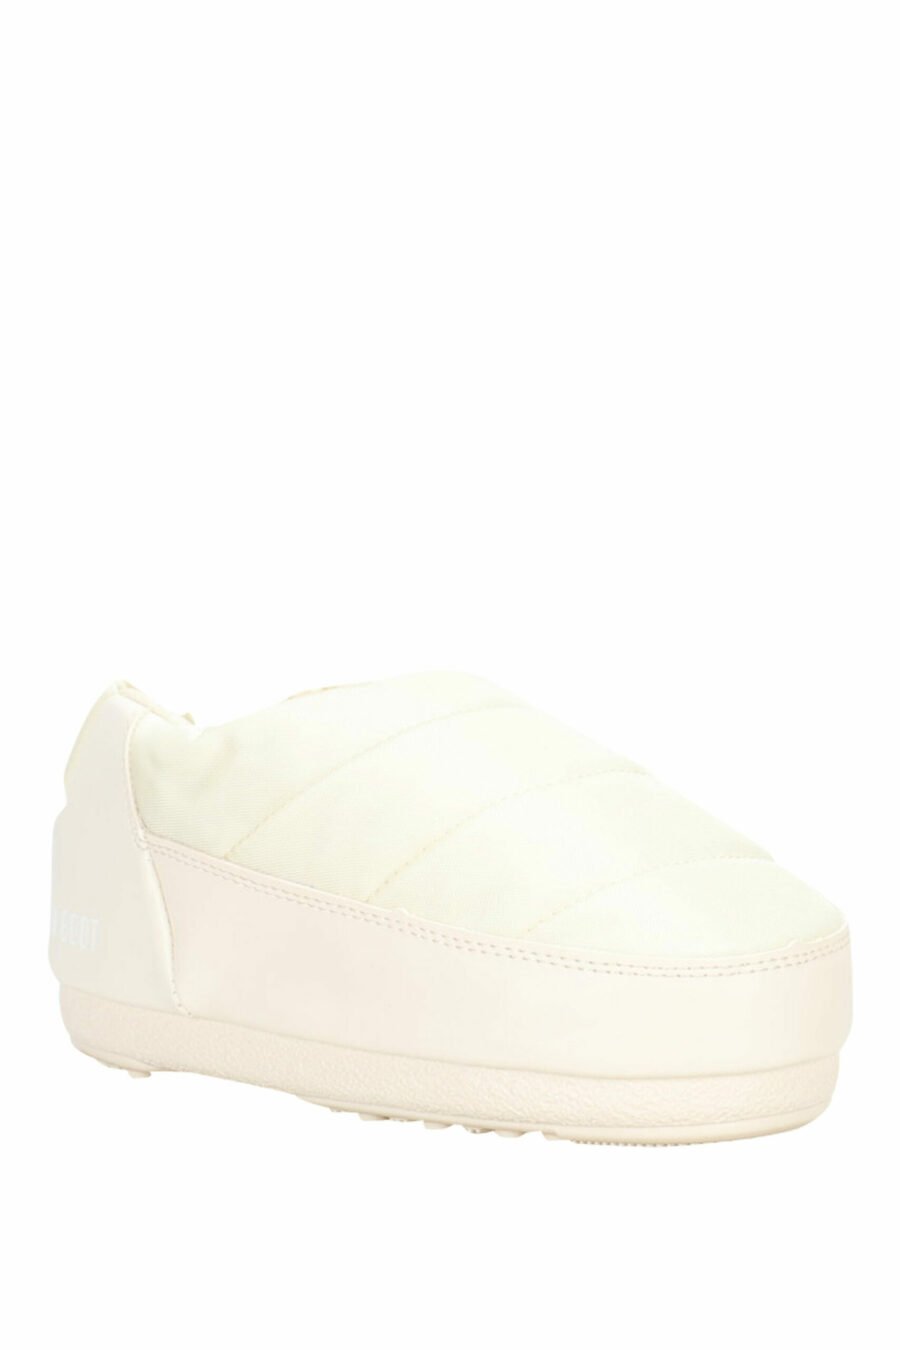 Sandales blanches avec mini-logo blanc - 8050032004080 2 échelles